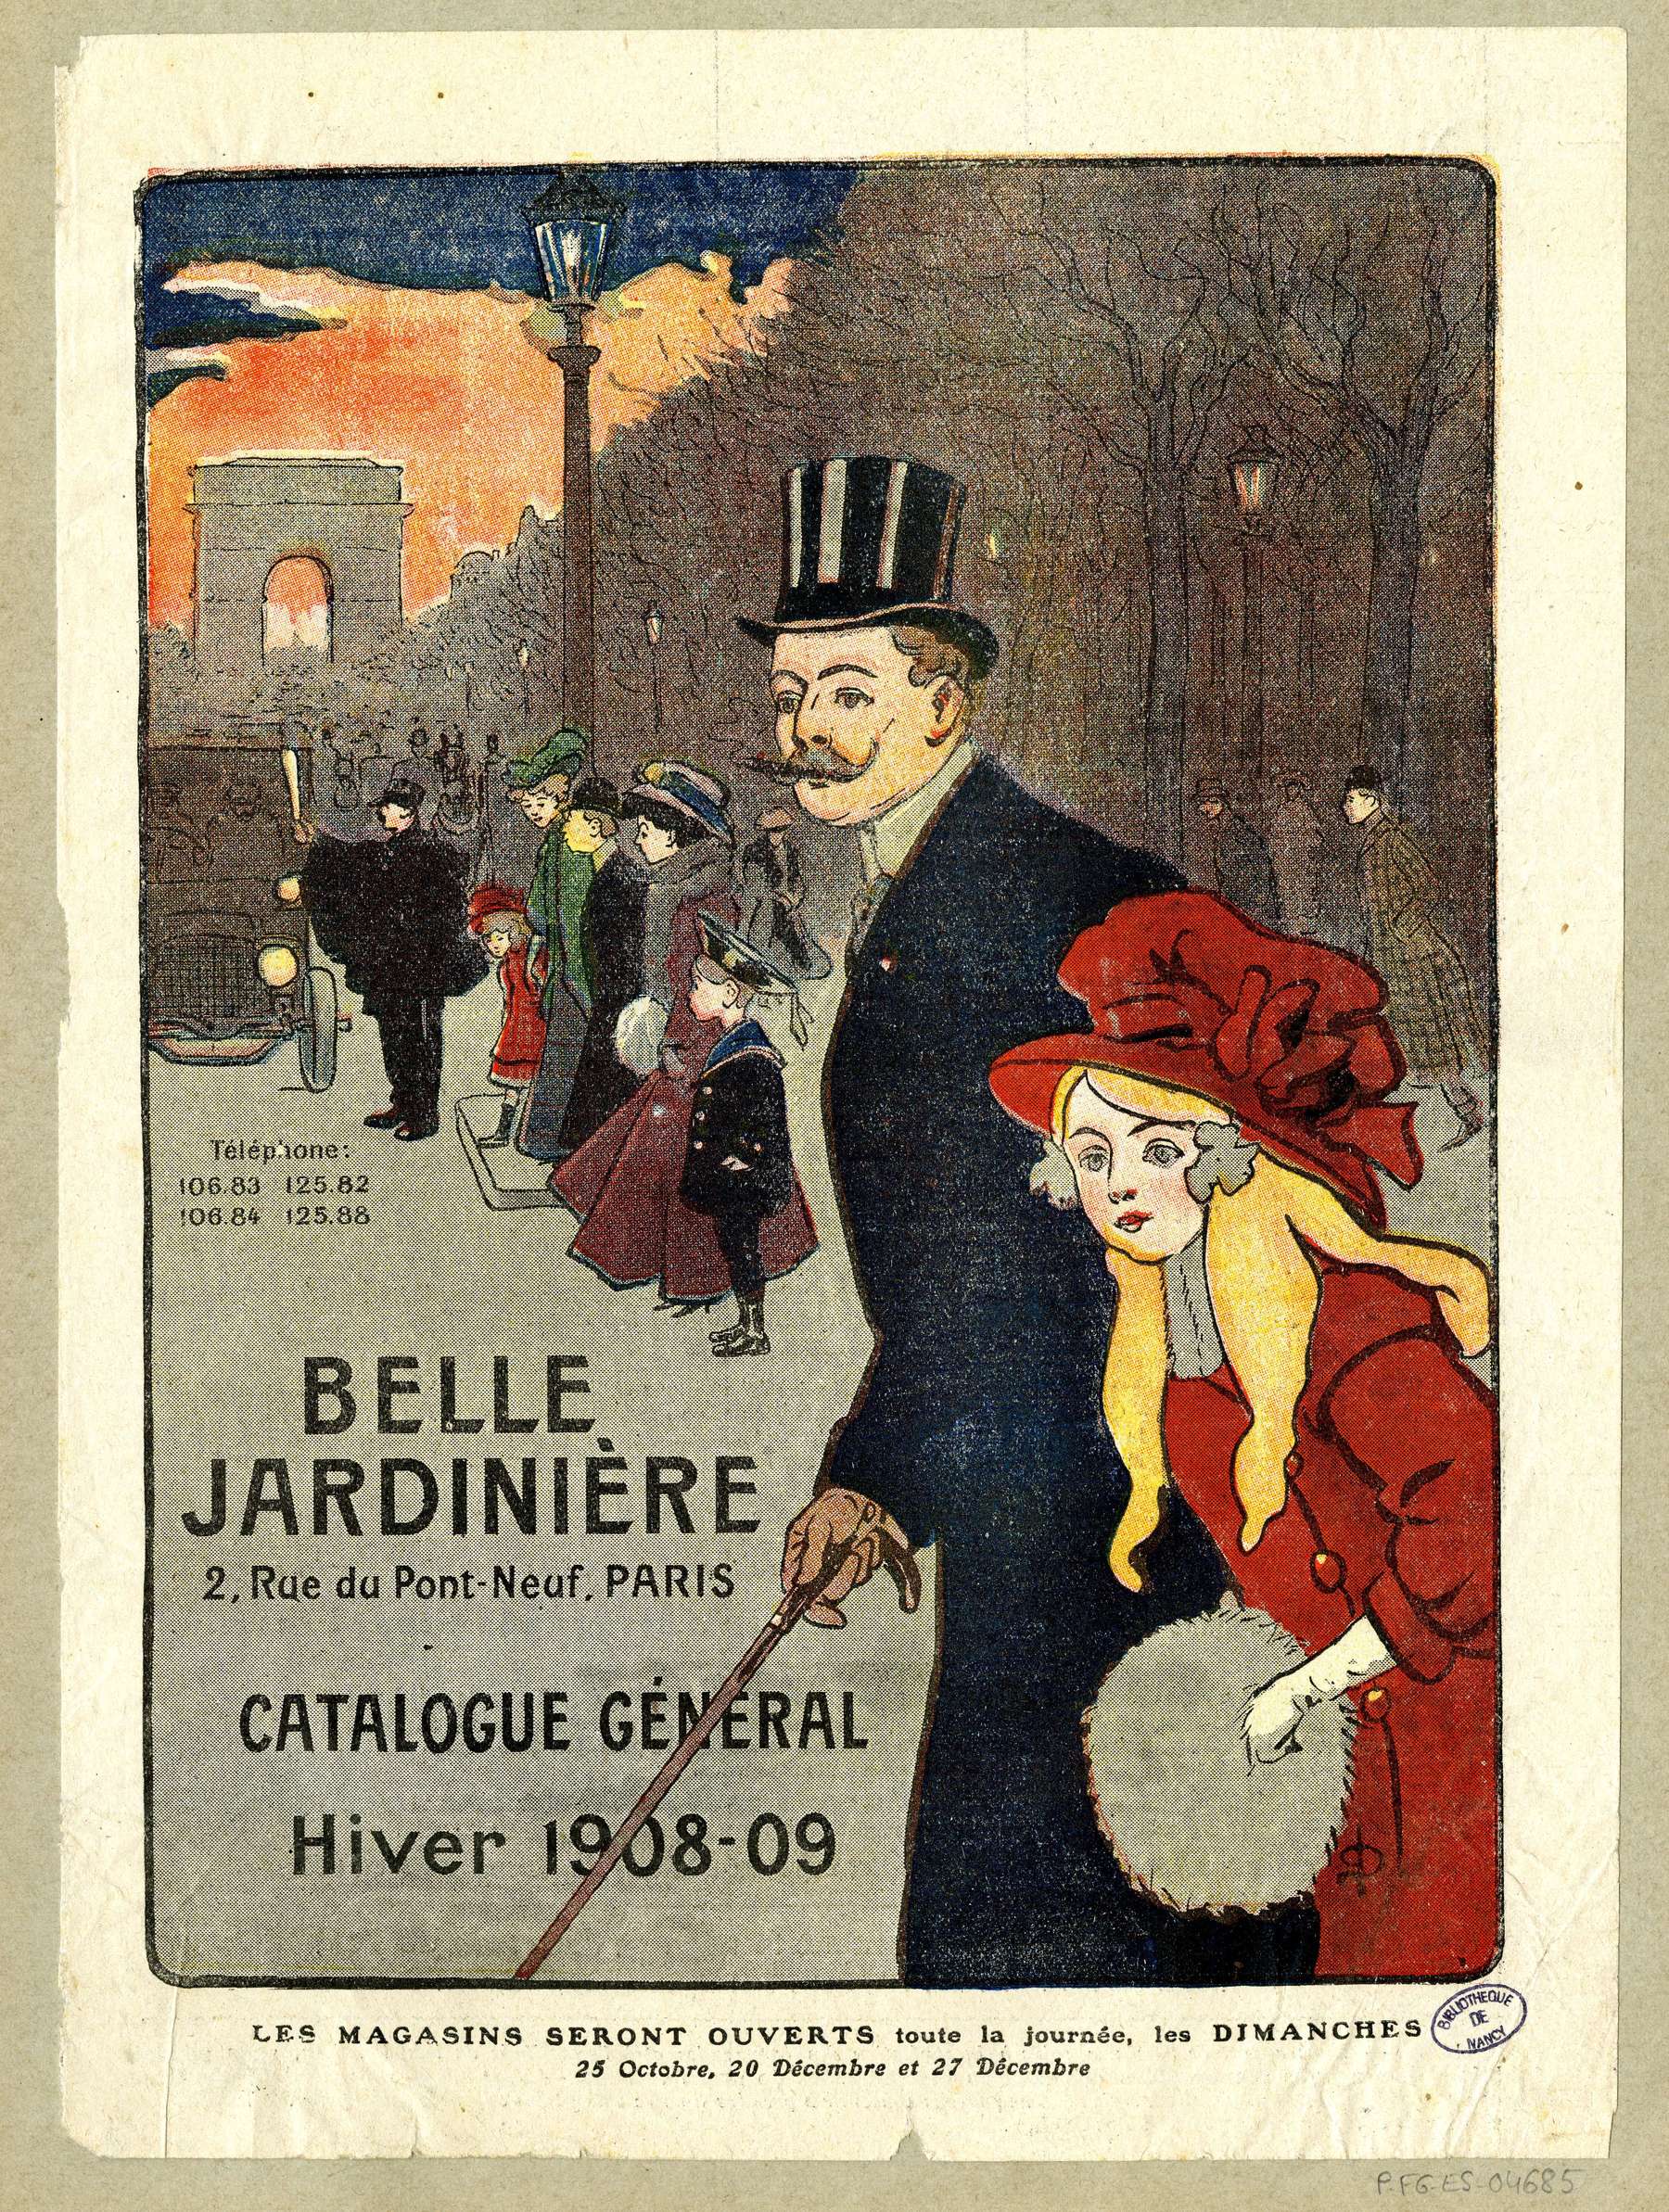 Contenu du Catalogue général hiver 1908-09